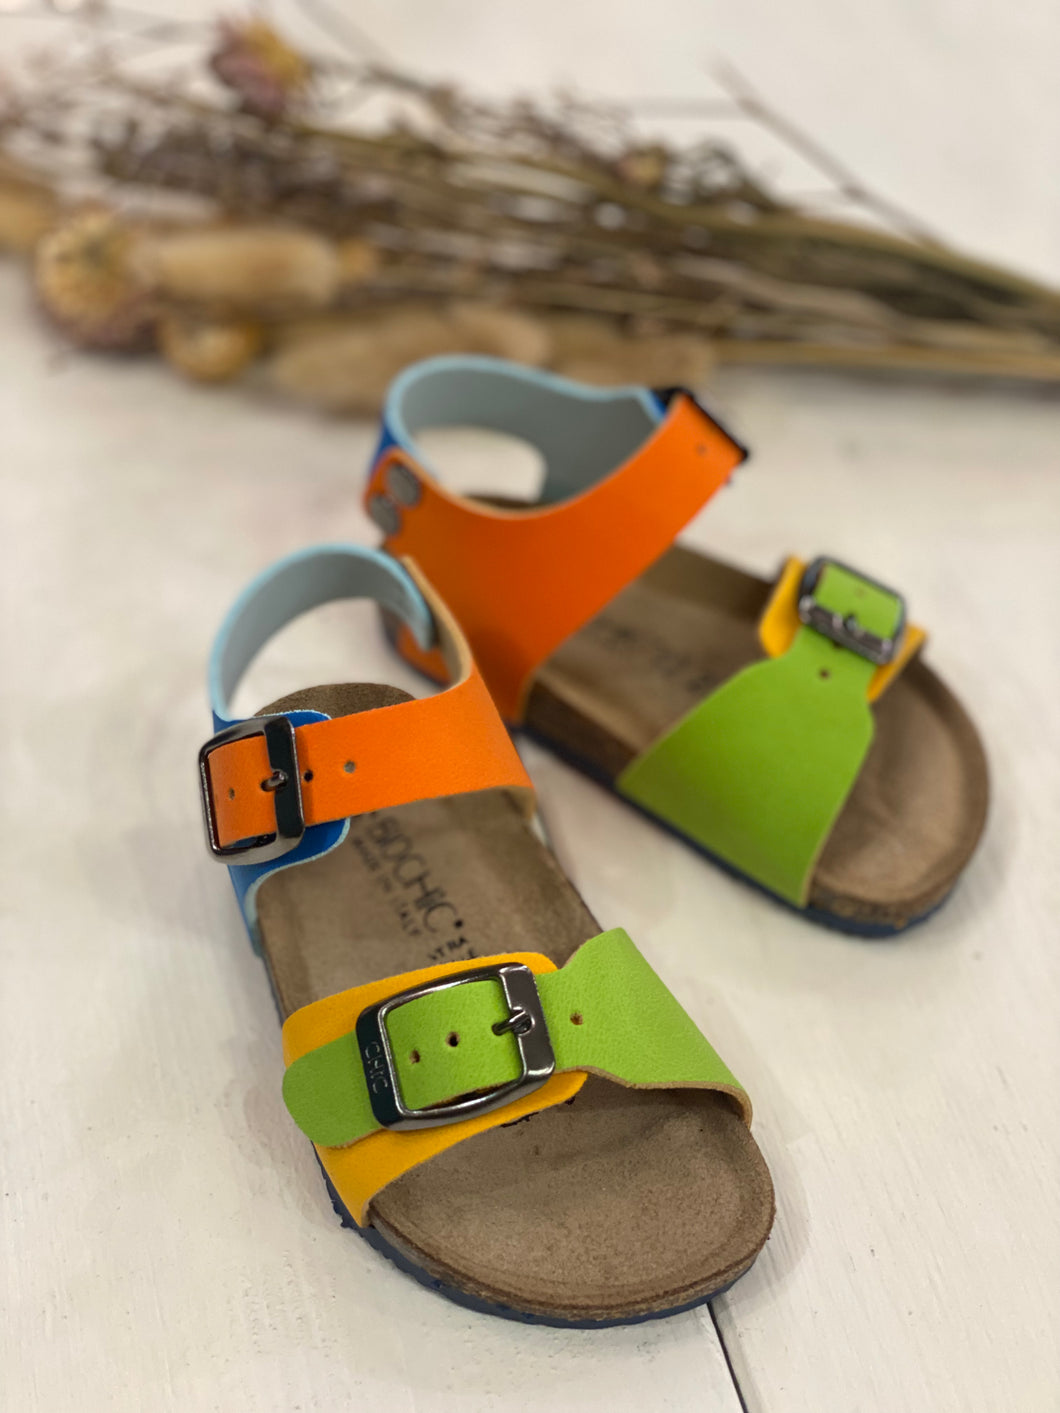 BIOCHIC sandali in pelle colore verde giallo arancio blu